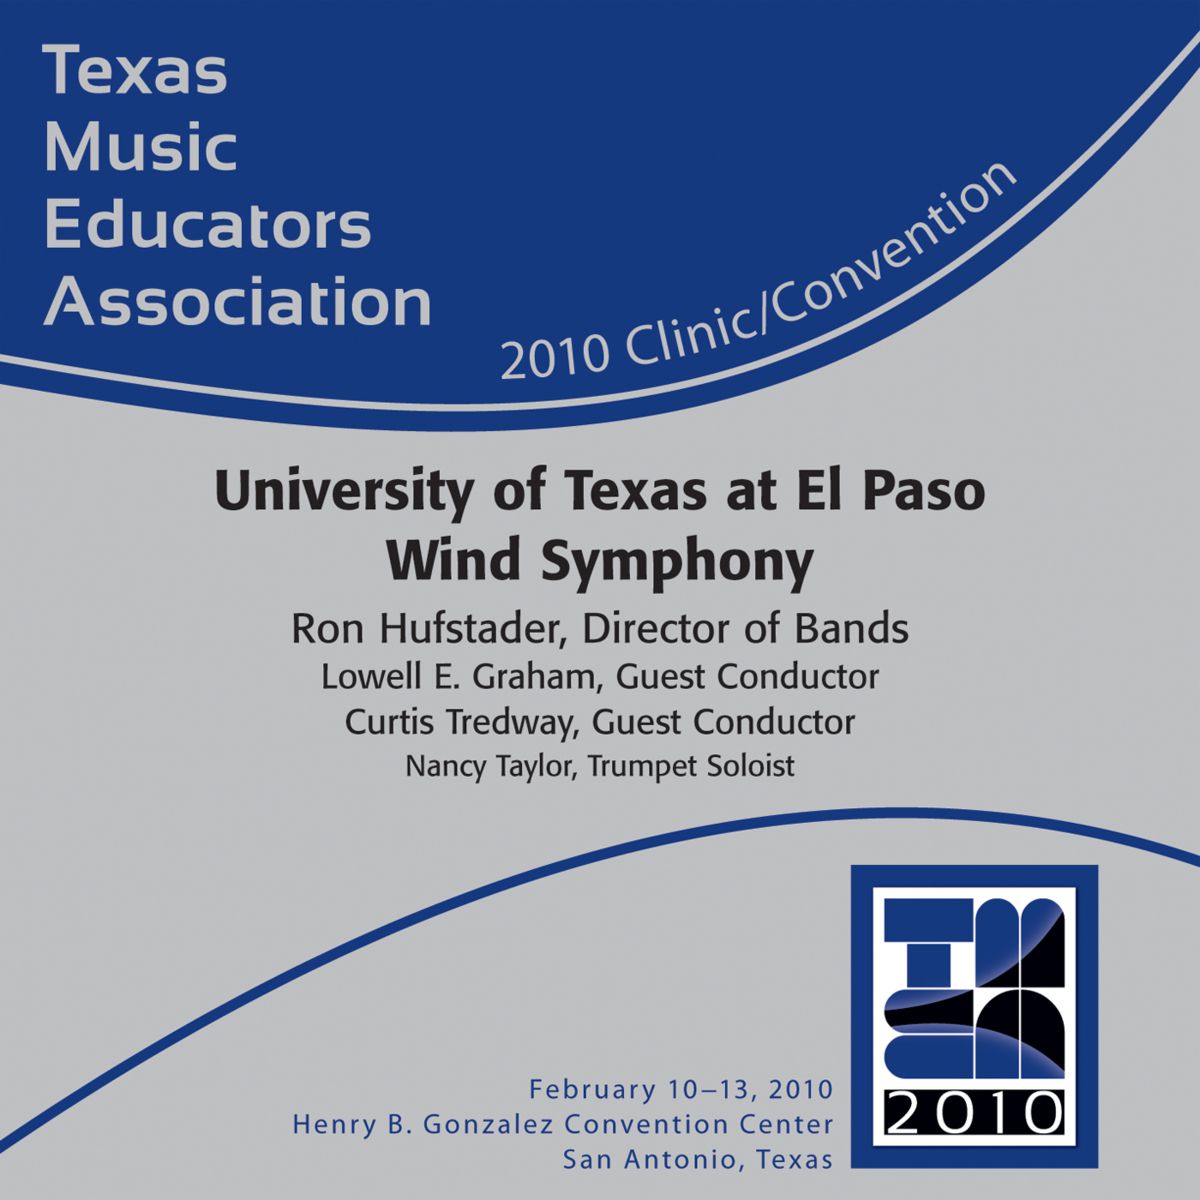 2010 Texas Music Educators Association: University of Texas at El Paso Wind Symphony - hacer clic aqu